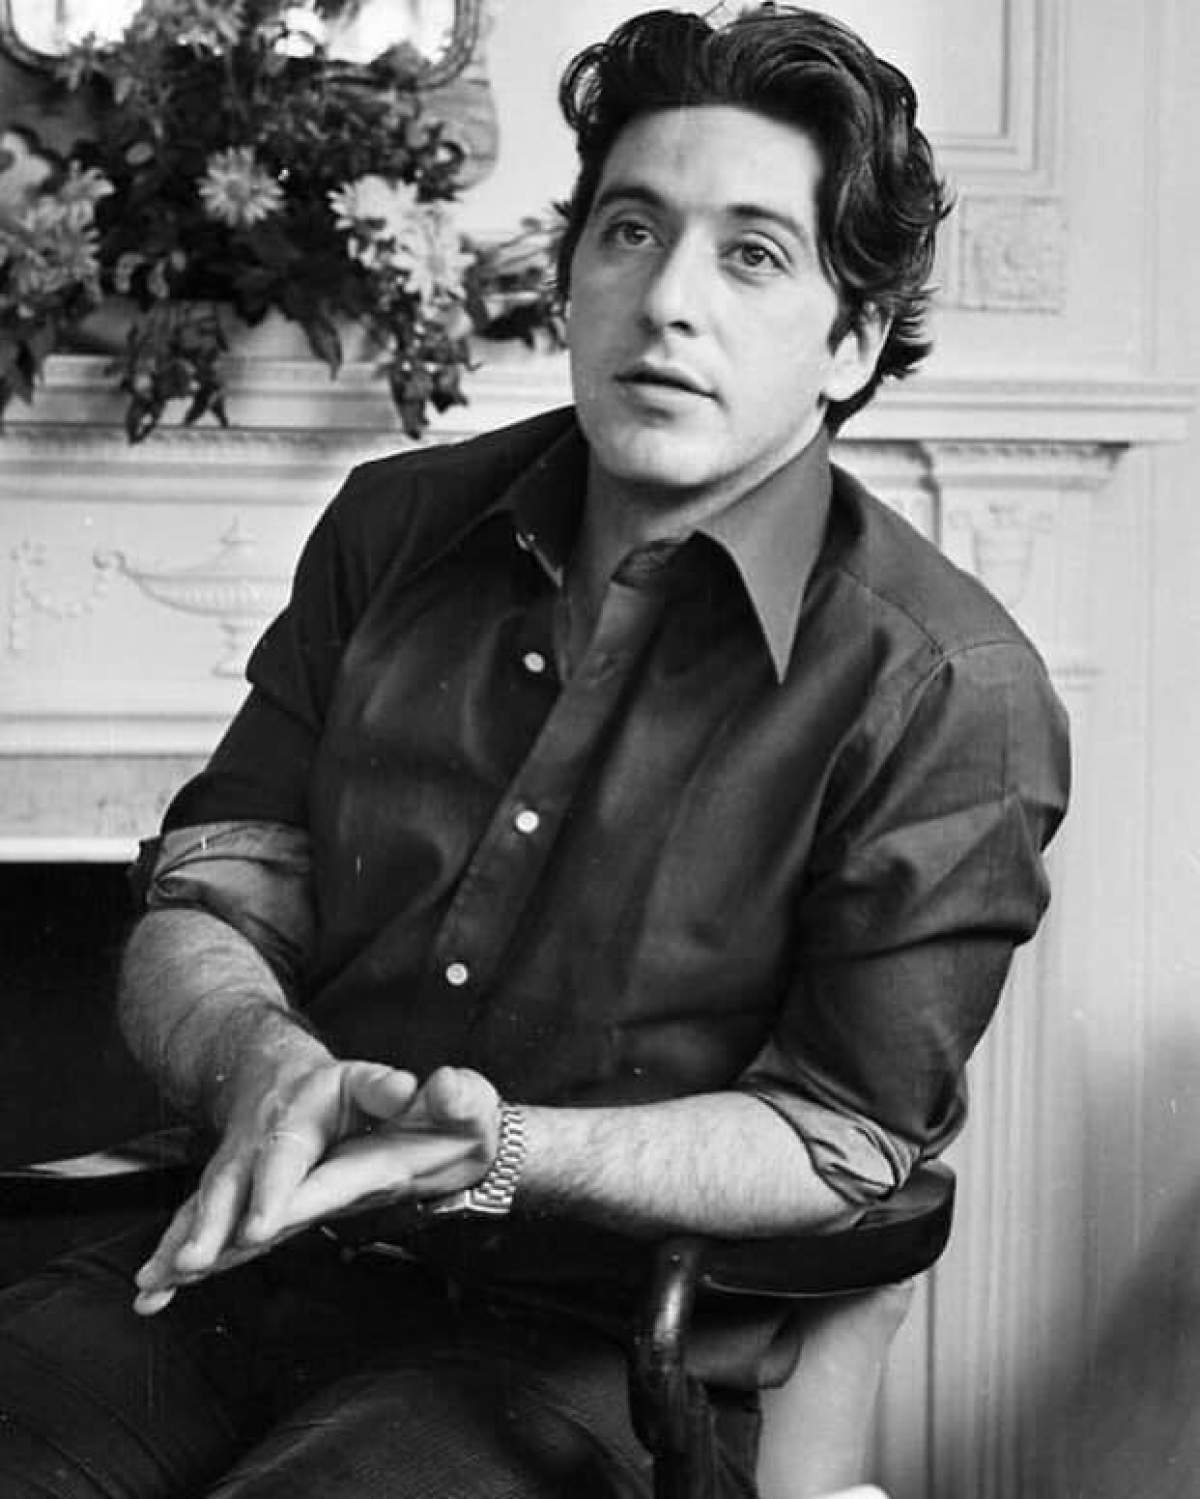 Sărbătoare mare pentru Al Pacino! Celebrul actor împlinește astăzi 80 de ani